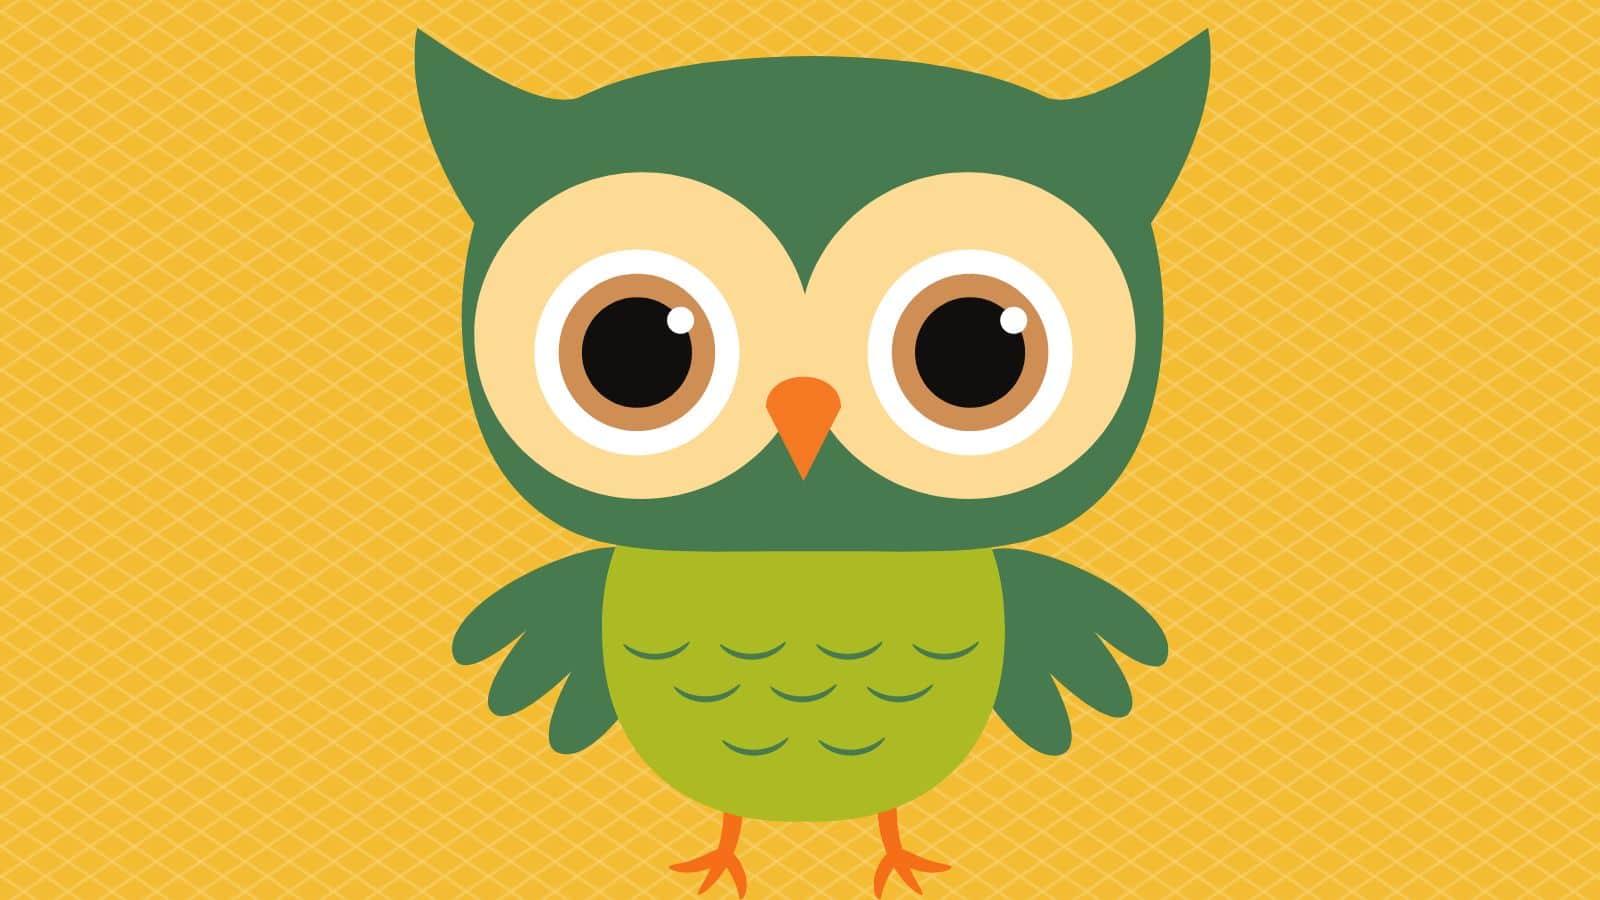 Little green owl